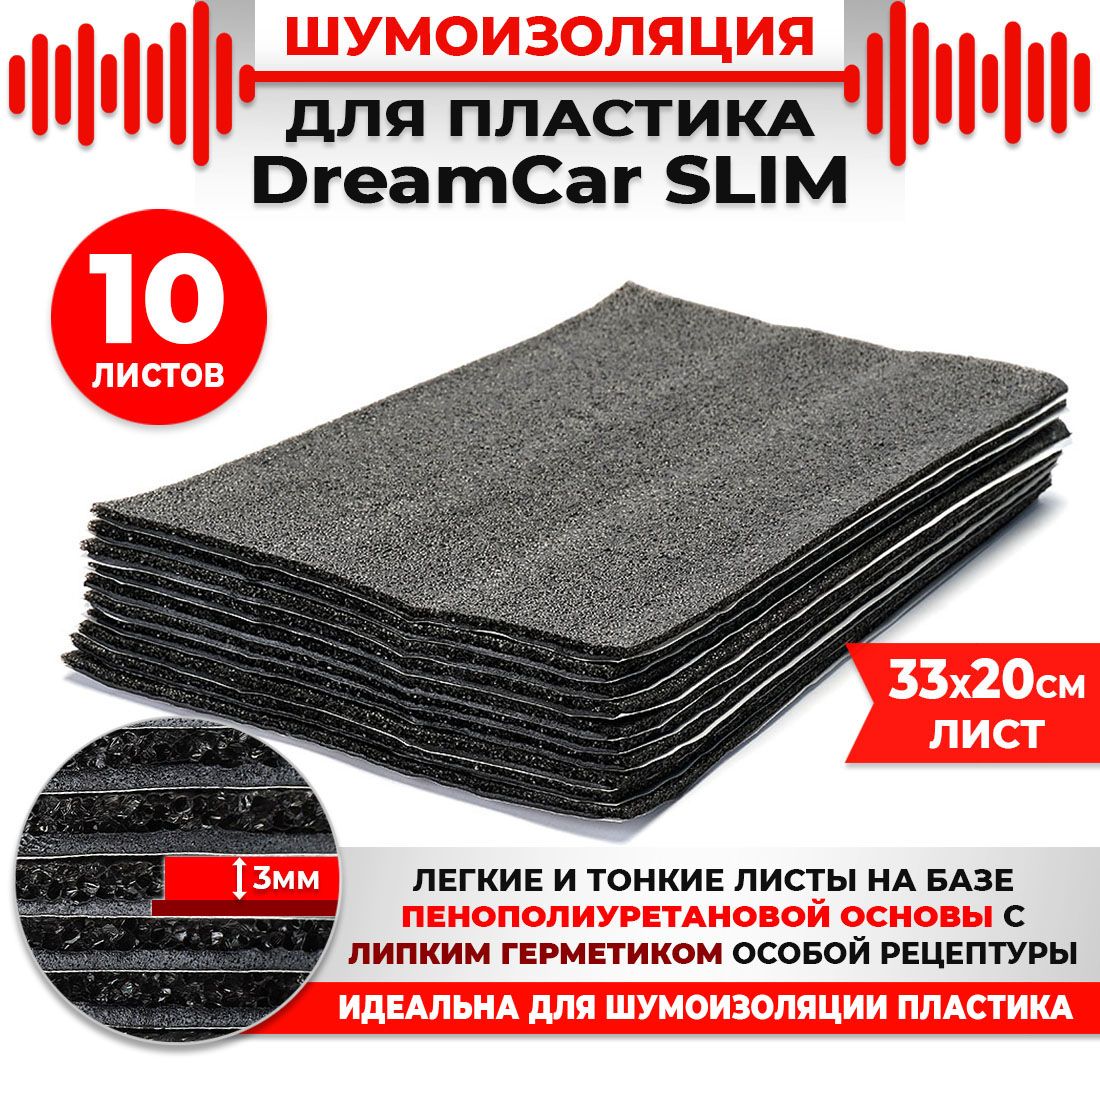 20 шт. Шумоизоляция 2х слойная для пластика DreamCar Slim 3мм 33x20см 20 листов 99